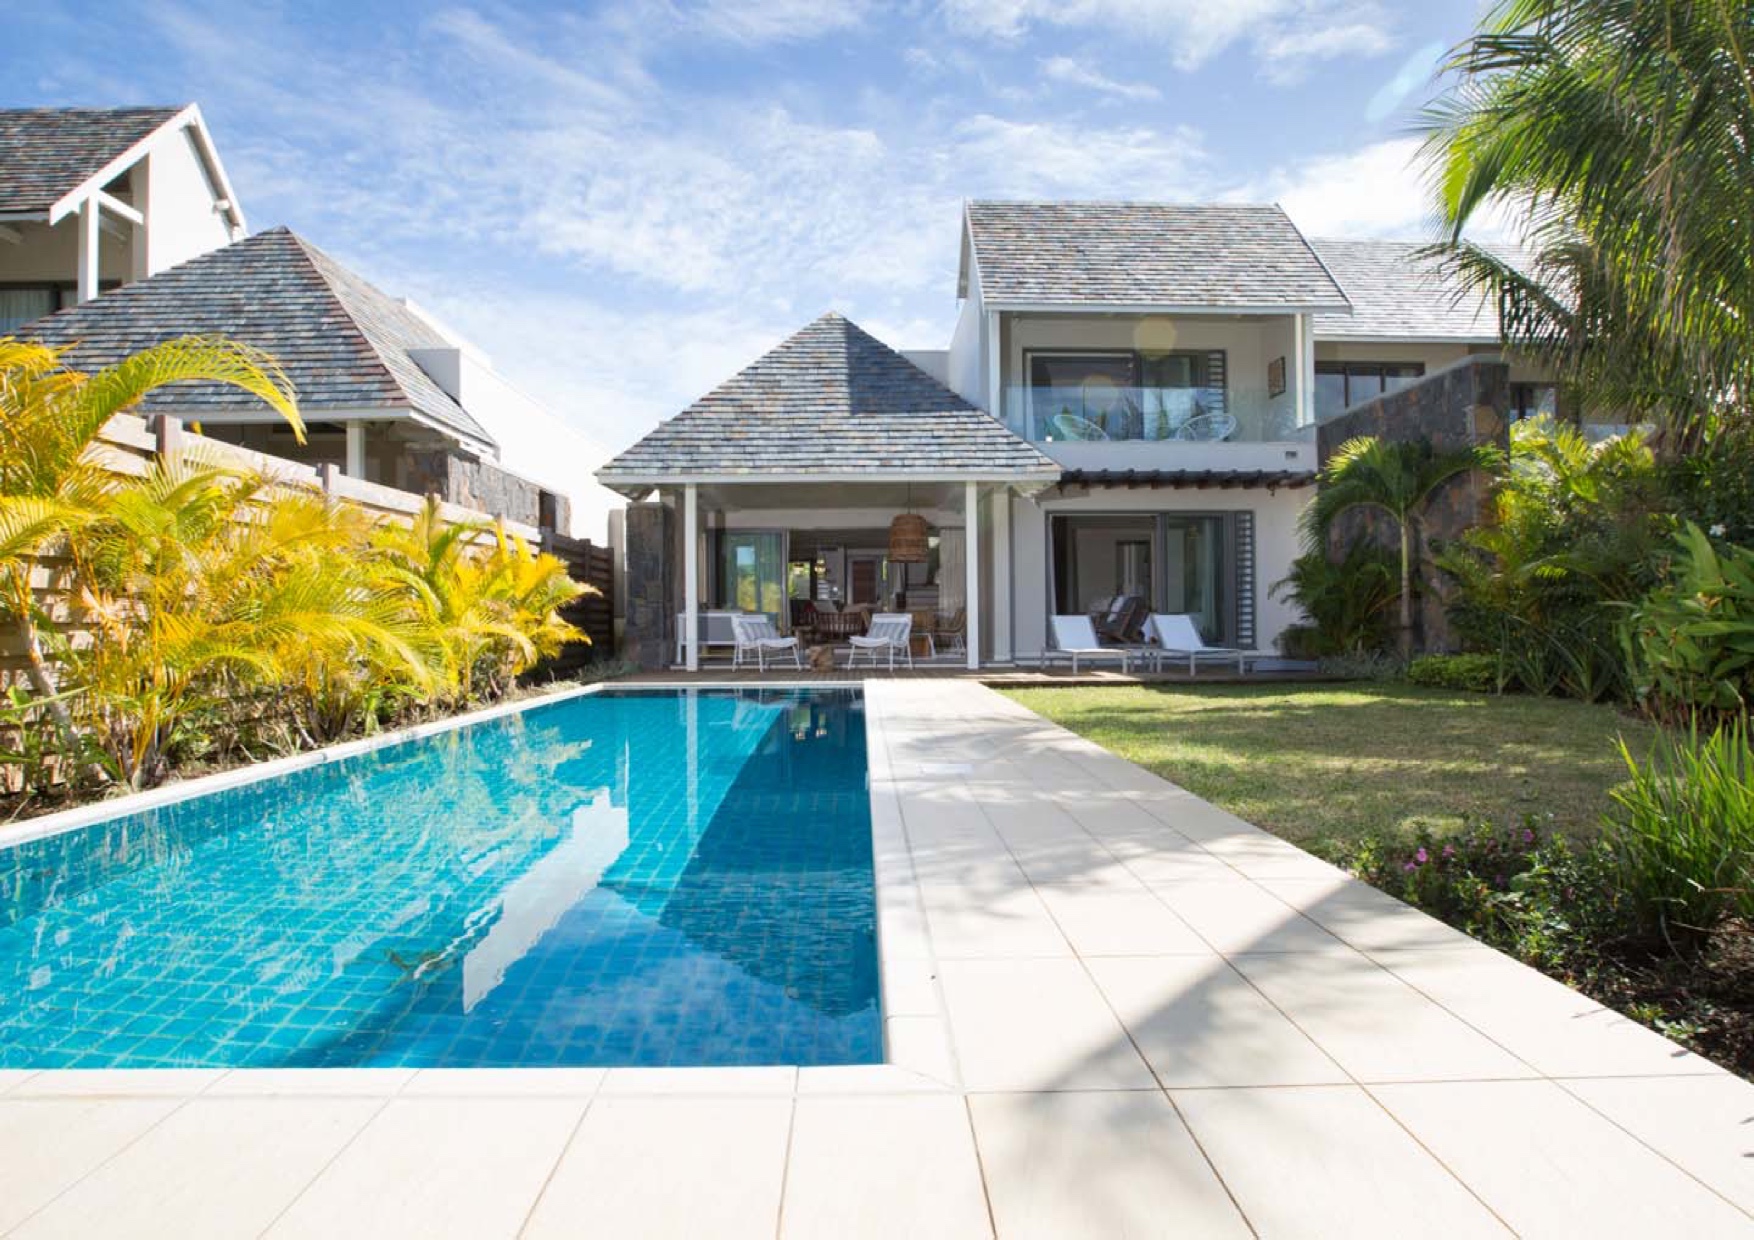 Villa jumelée IRS 3 chambres à vendre Beau Champ – Île Maurice